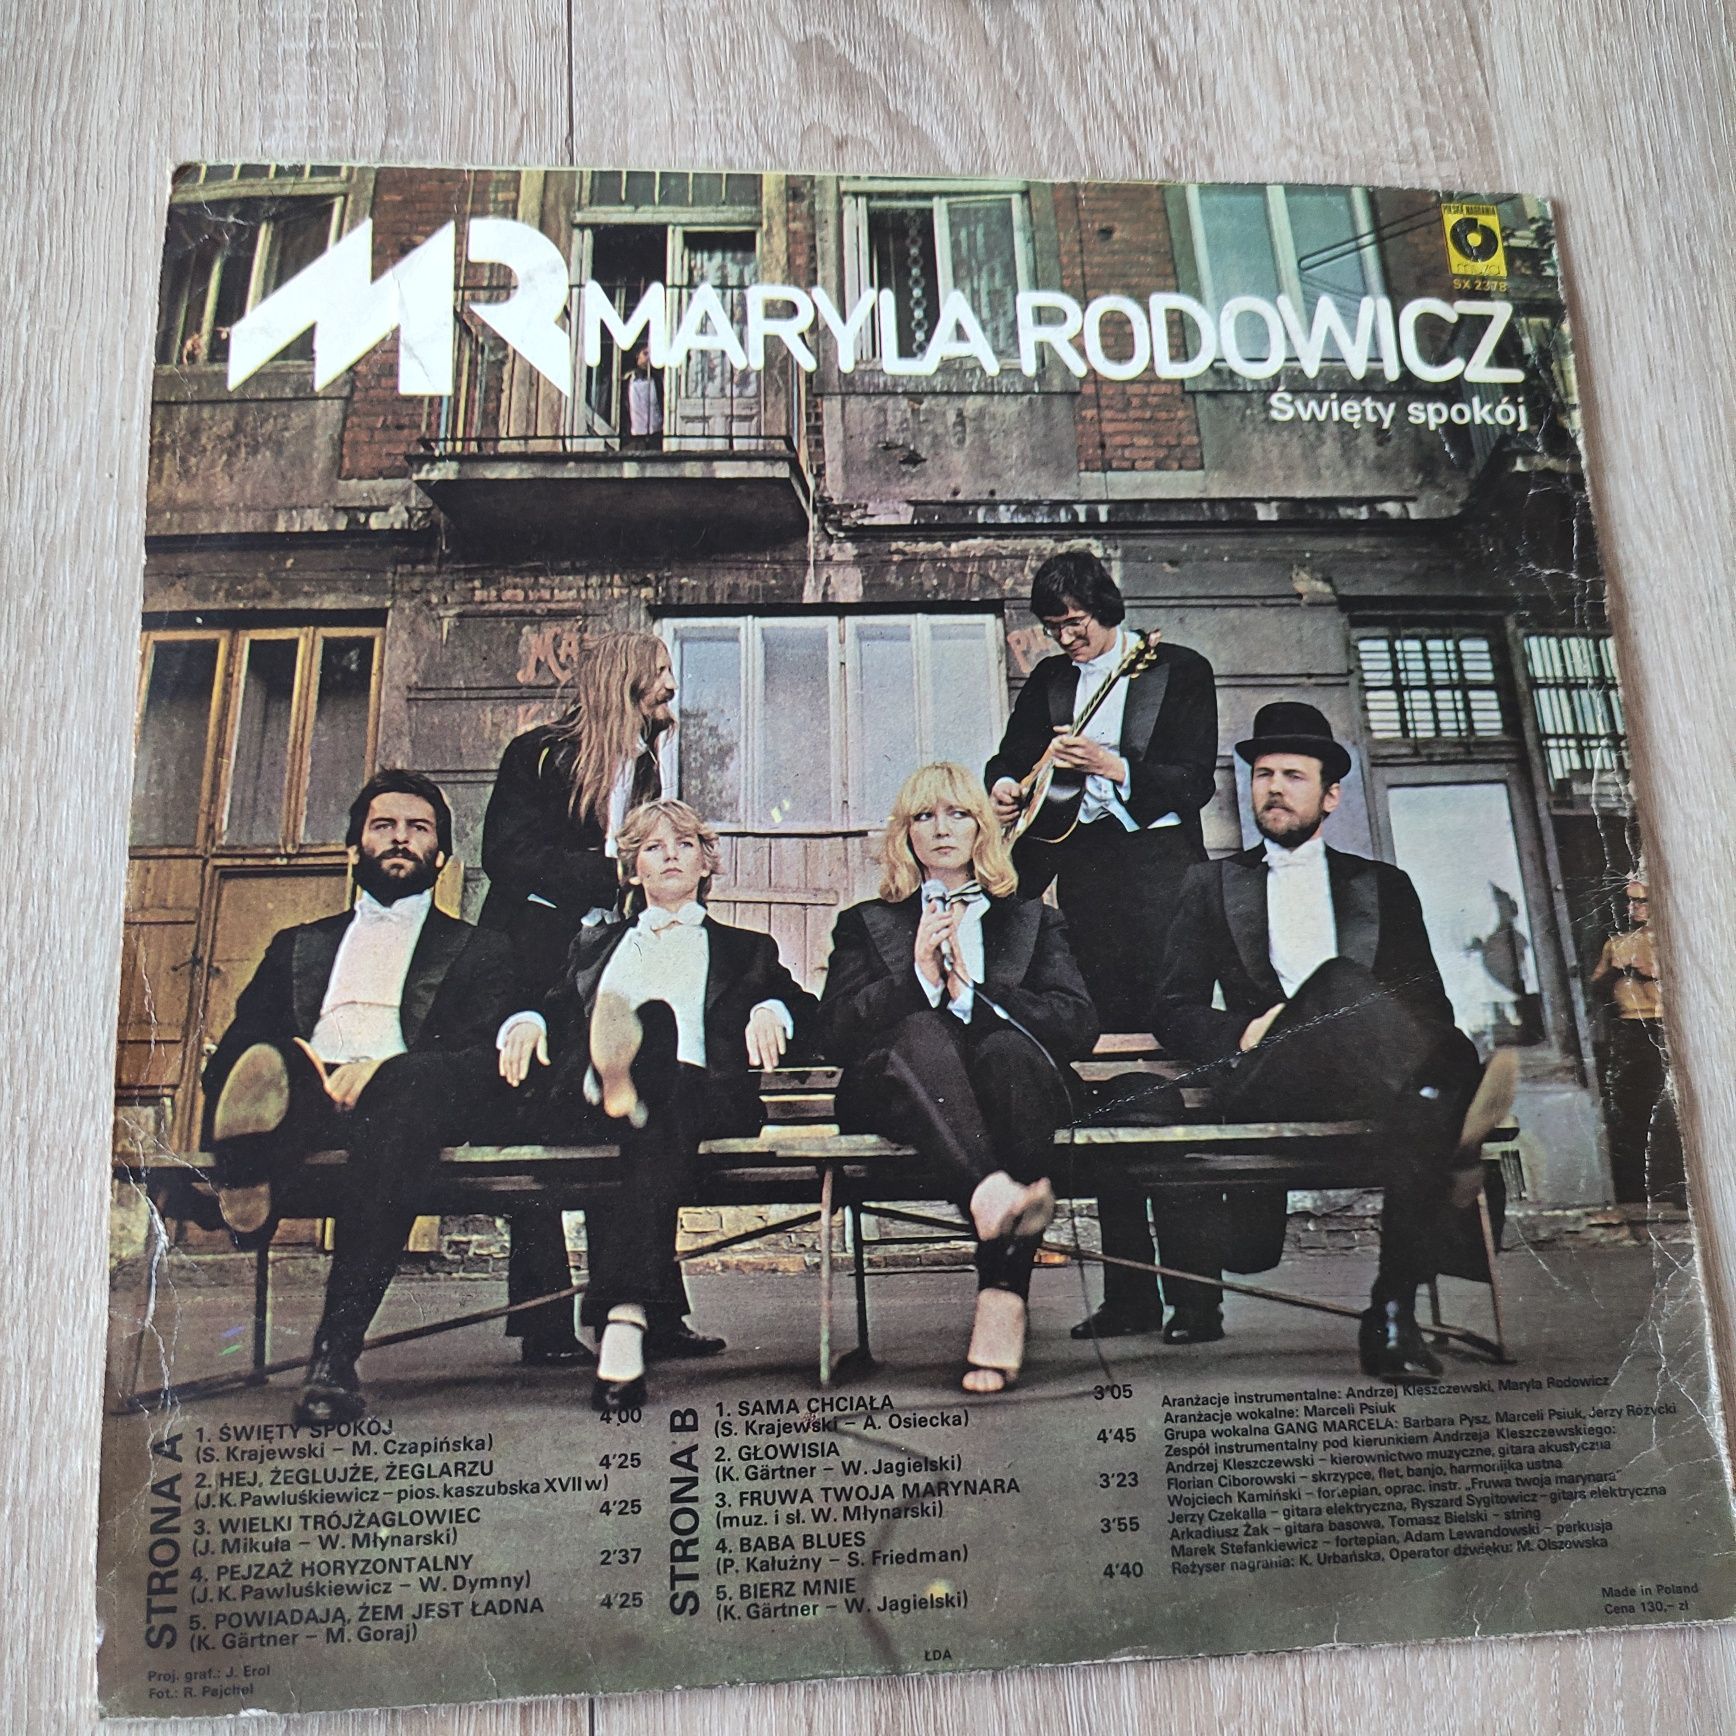 Płyta winylowa Maryla Rodowicz "Świety spokój"